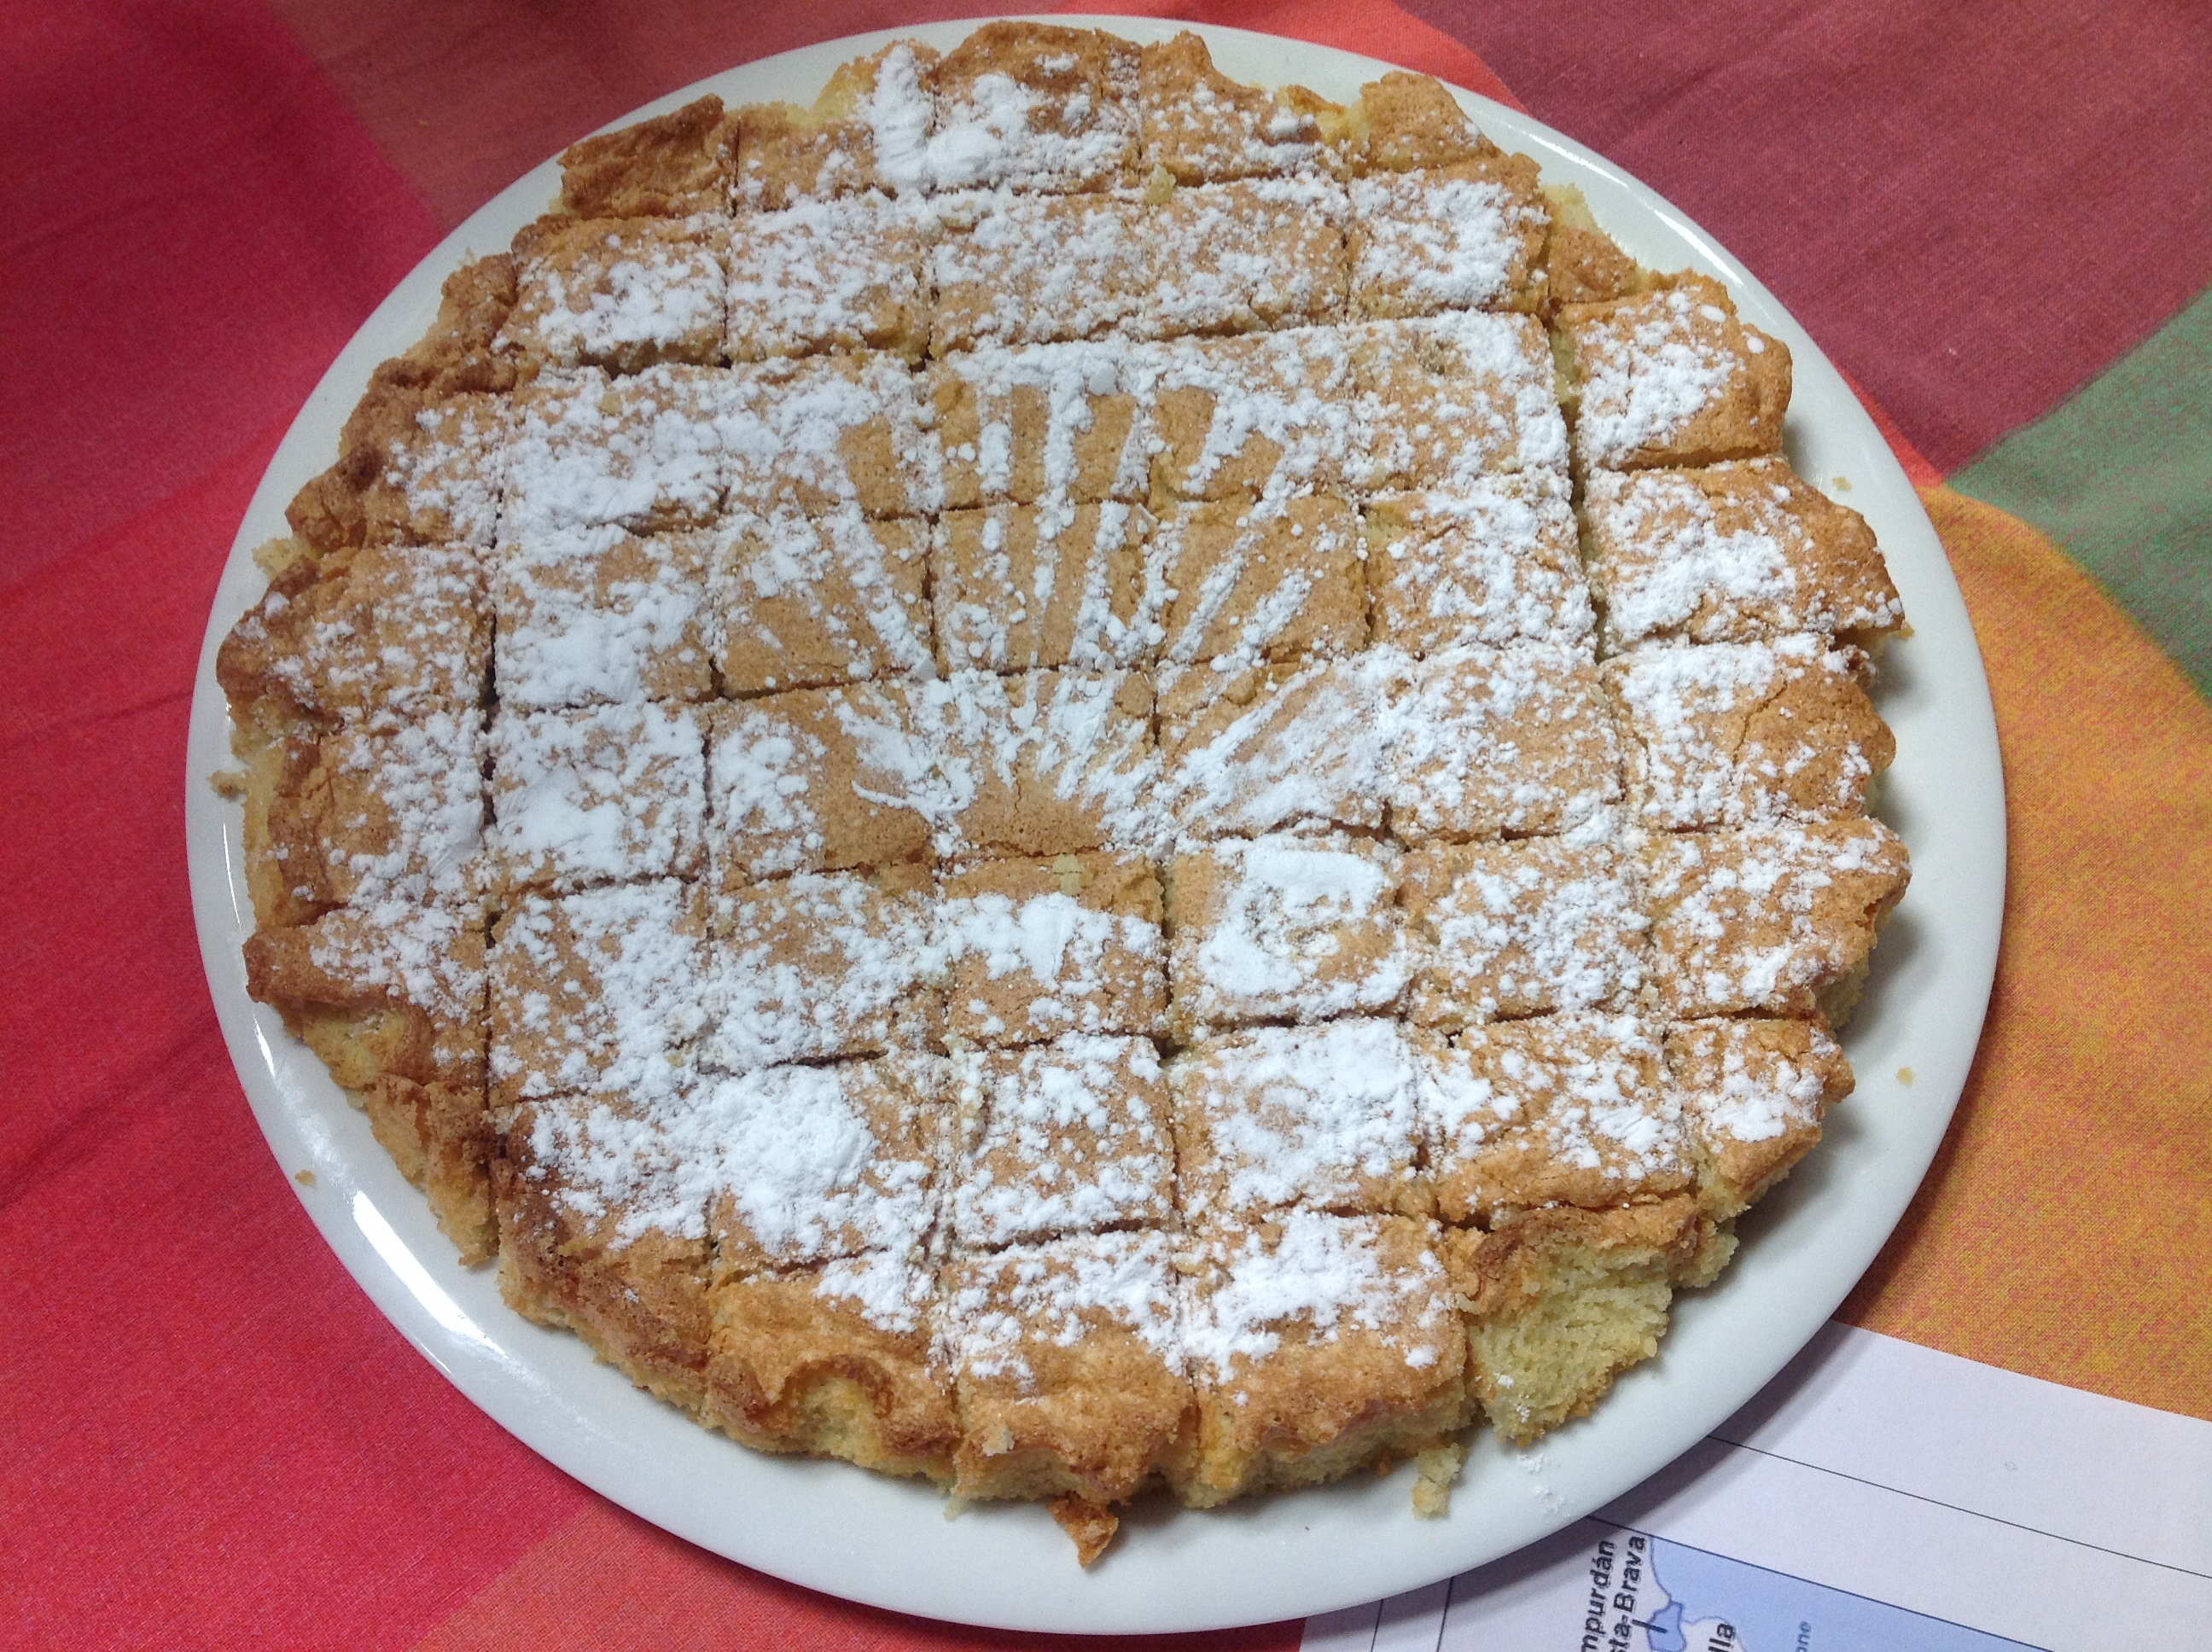 Et pour le dessert, Mauricette nous a offert une superbe tarte, selon la recette de la région de Galice